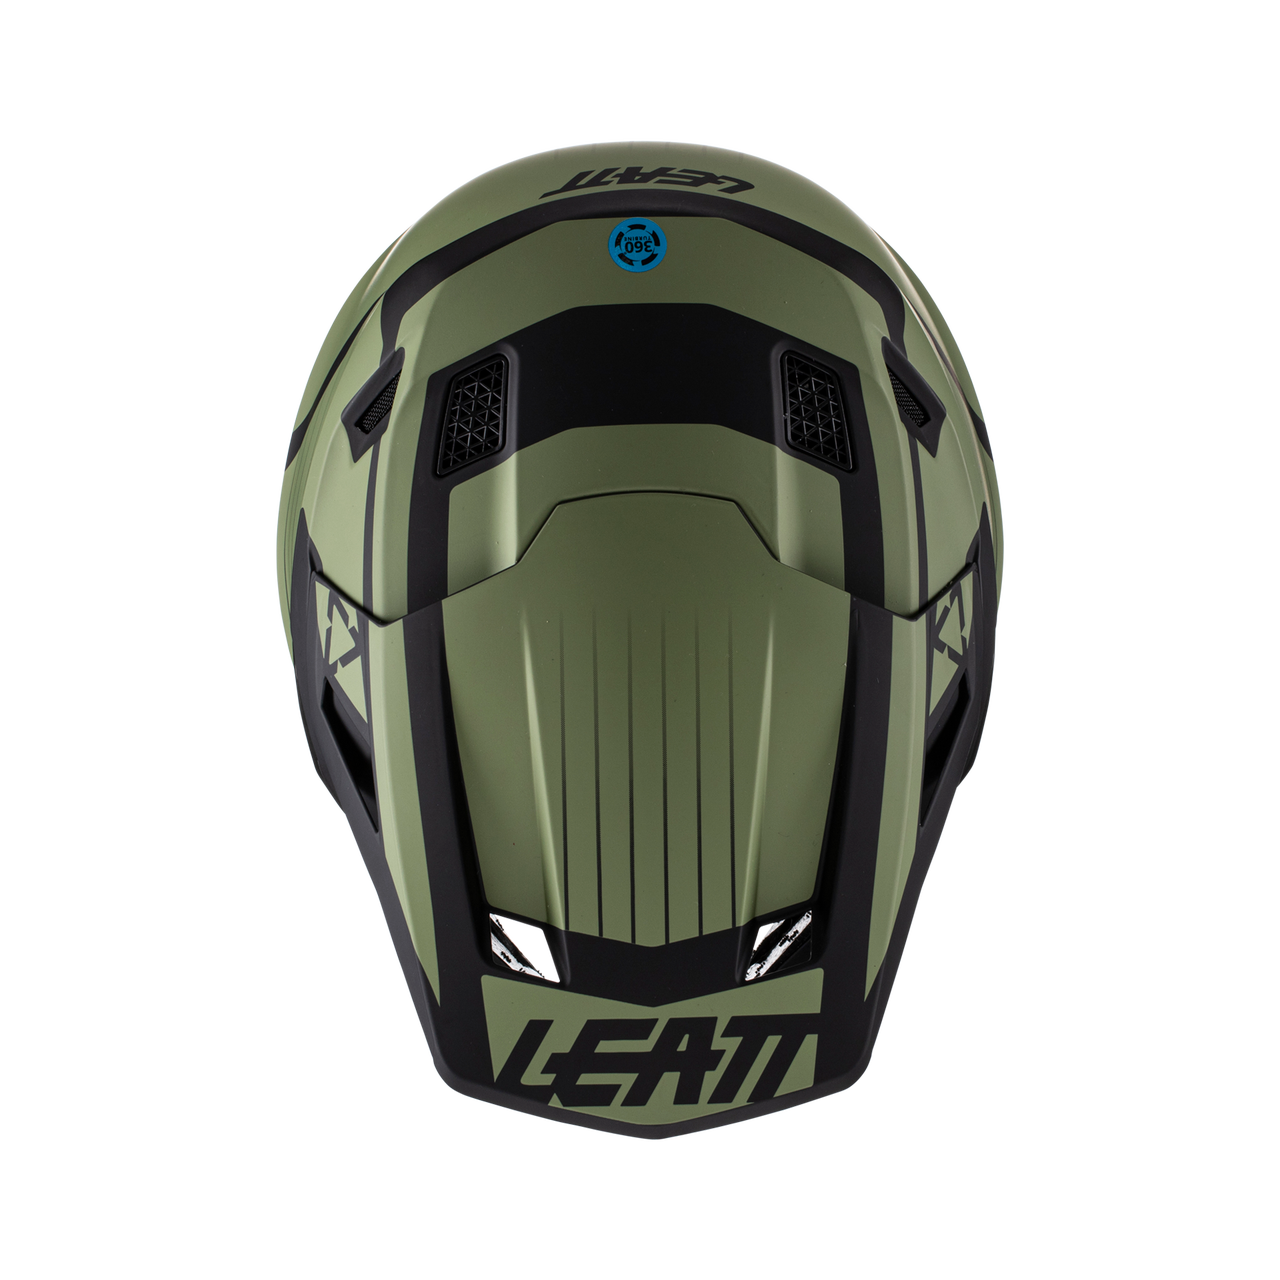 leatt-helmet-full-face-kit-moto-7-5-v22-cactus